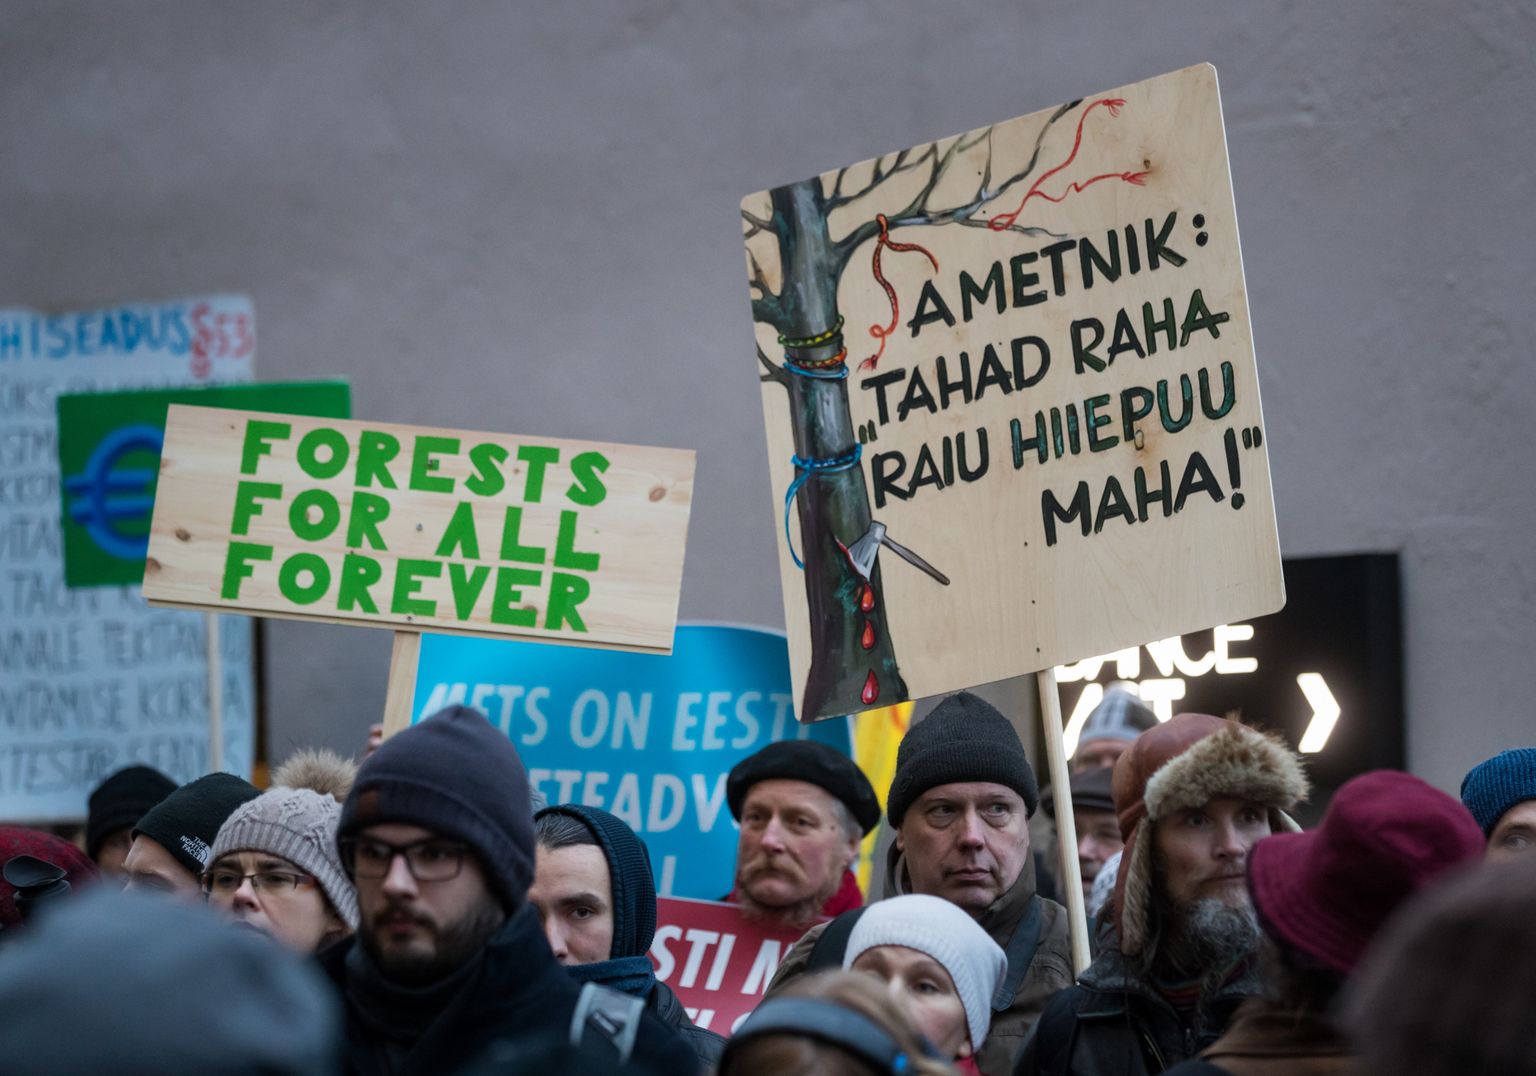 Tallinn, 15.12.2017
Meeleavaldus ja rongkäik Eesti metsa abiks.
FOTO: MIHKEL MARIPUU/POSTIMEES